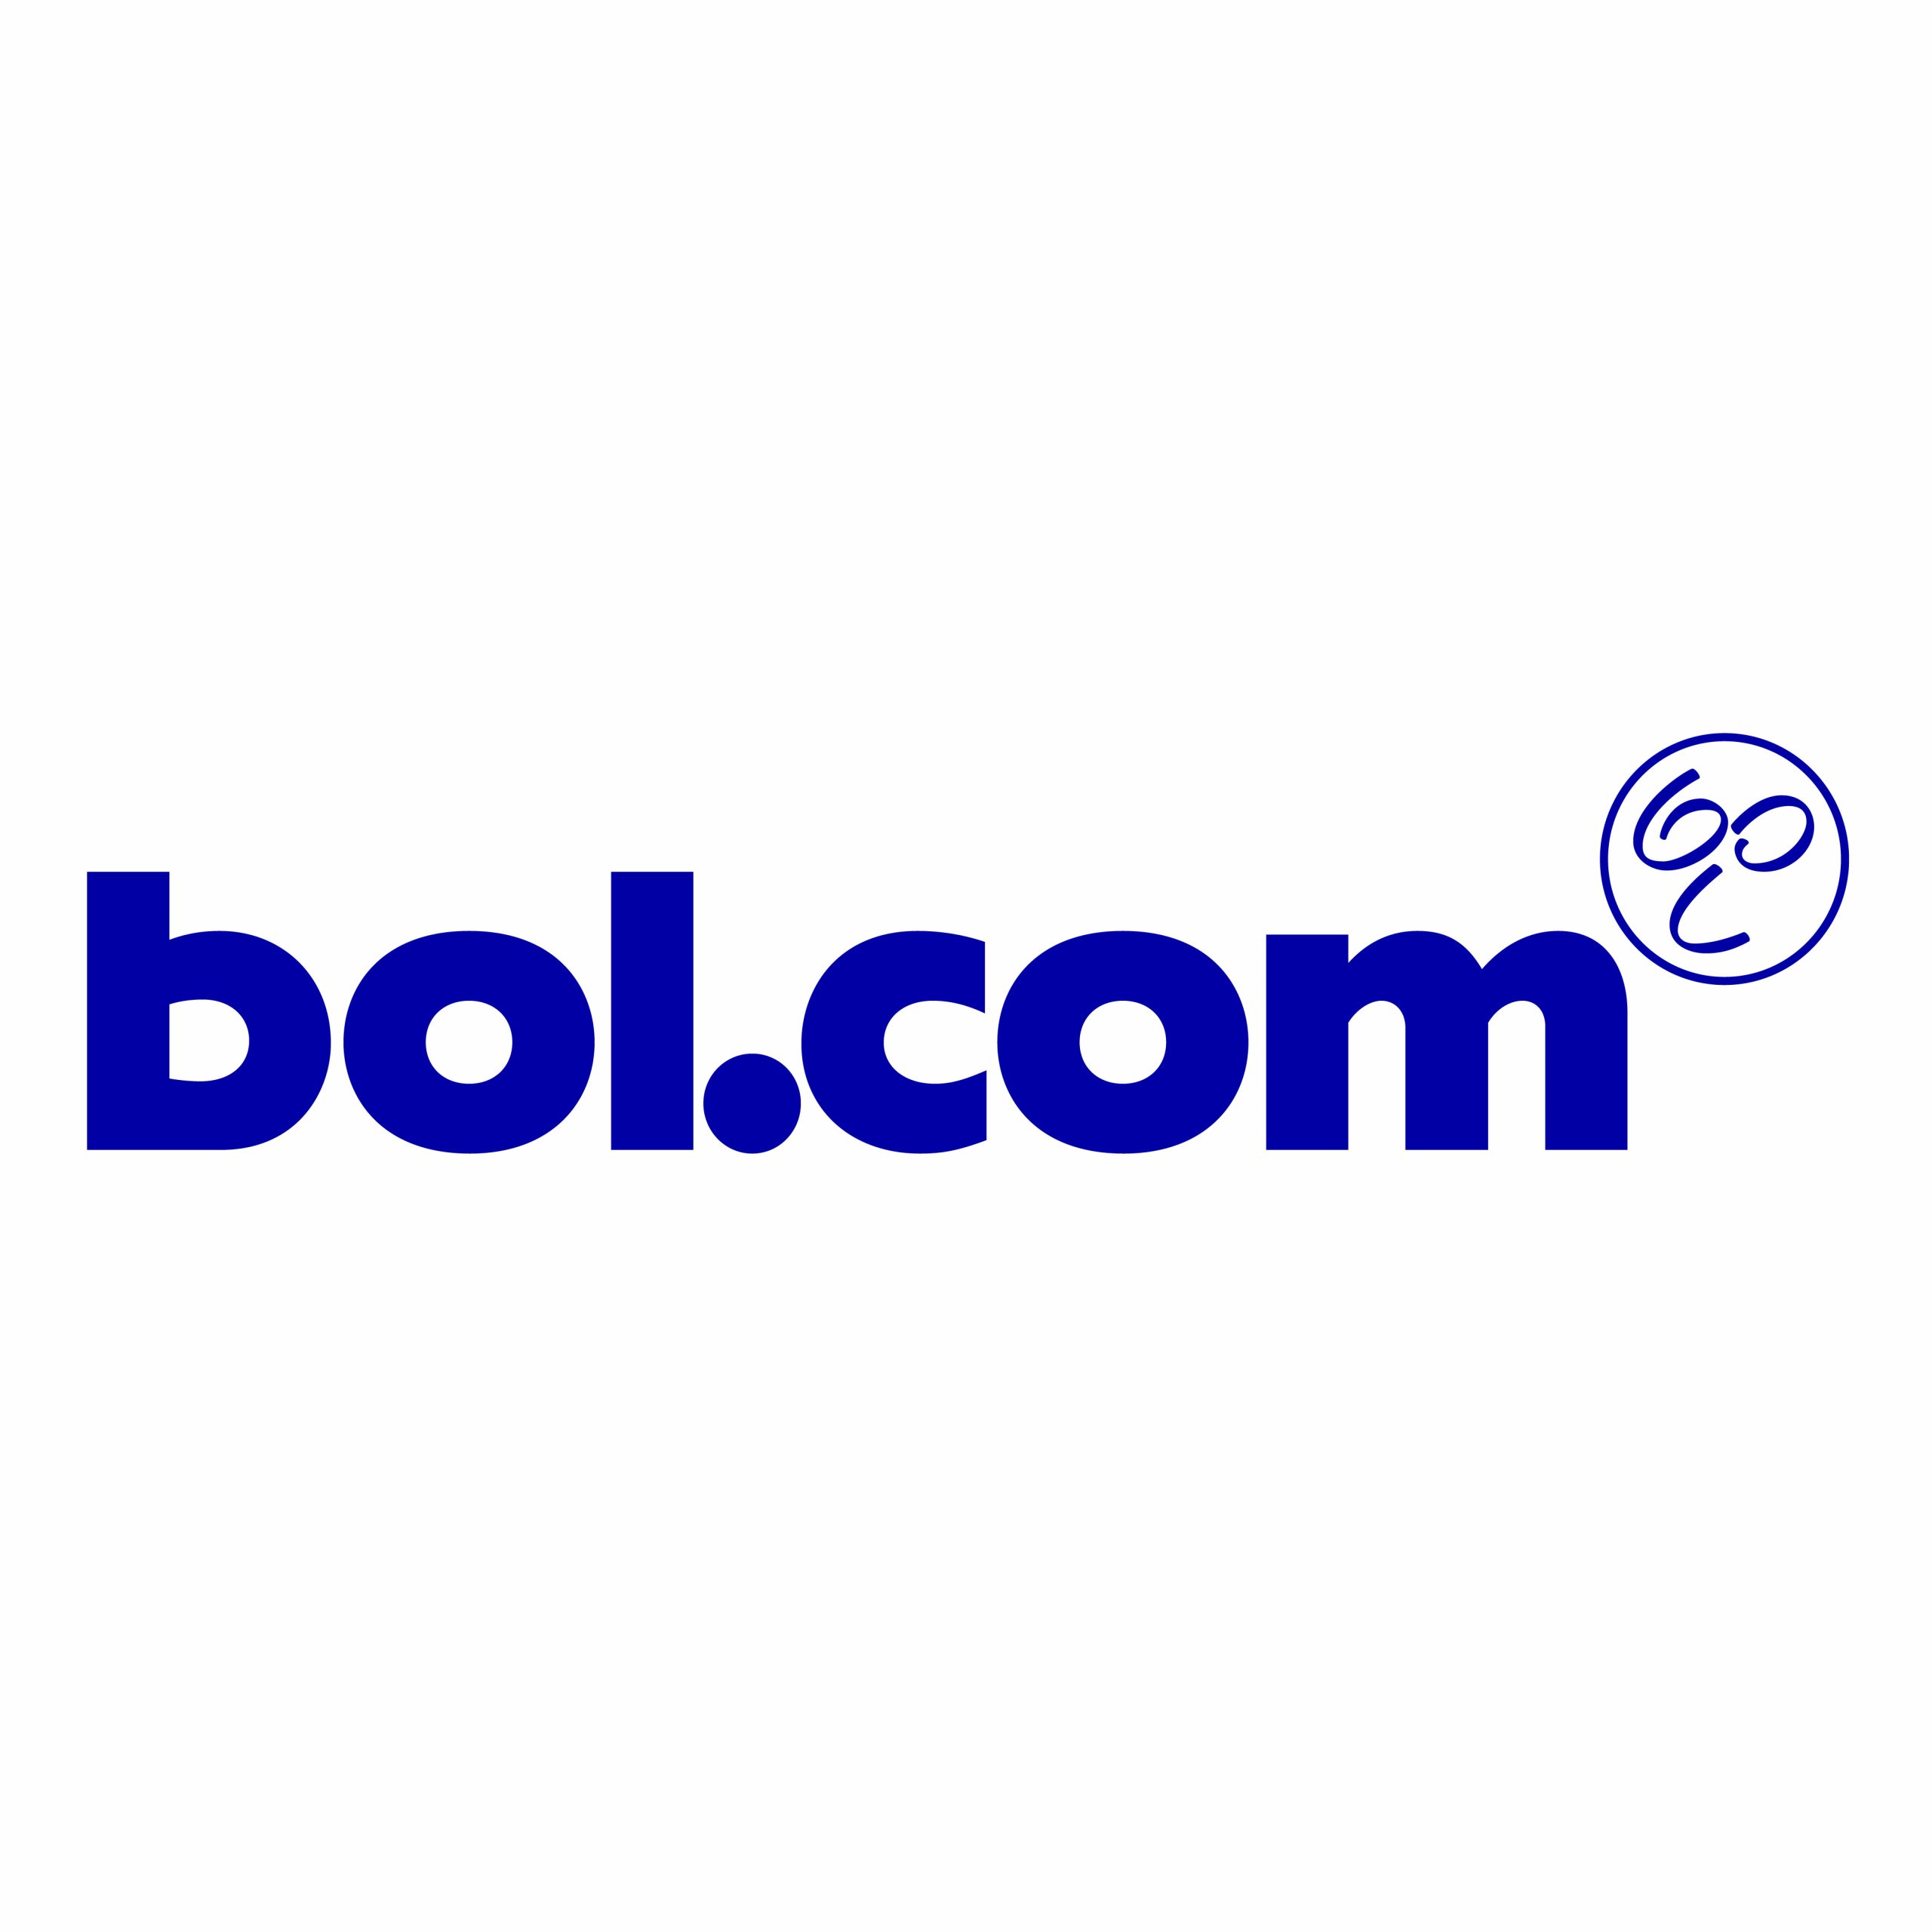 Bol.com (Logistics by Bol.com)